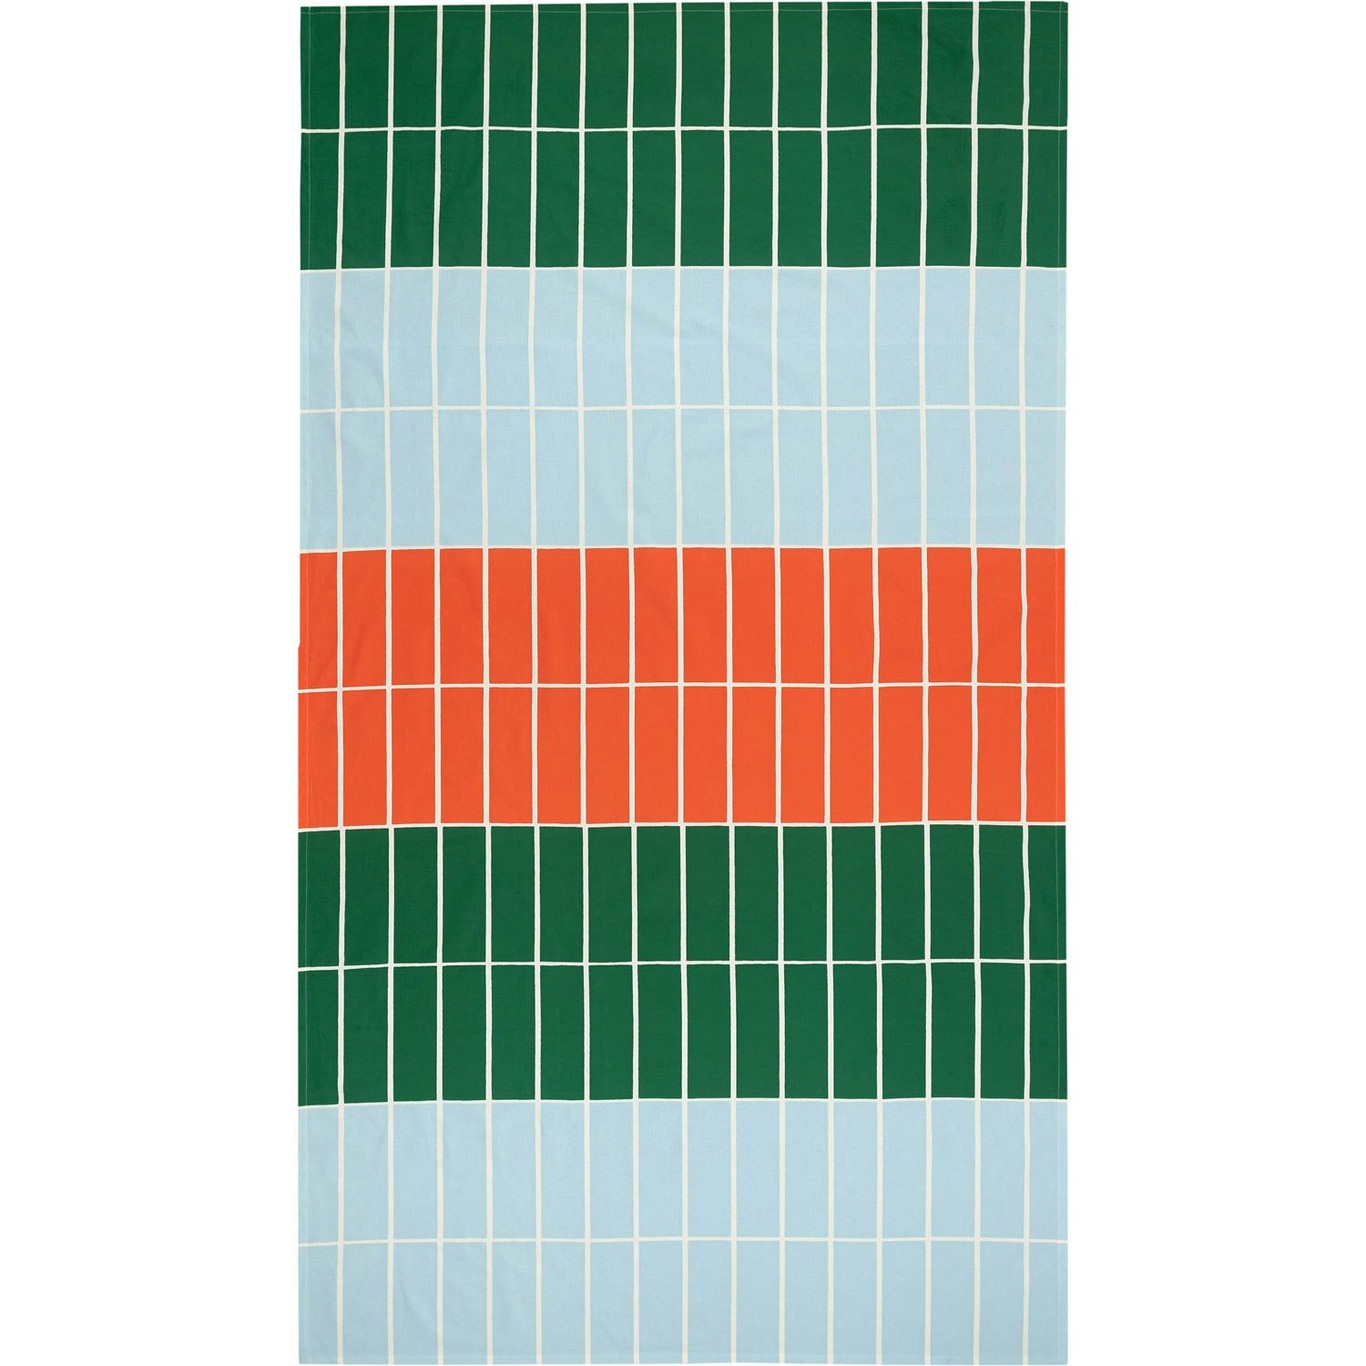 Tiiliskivi Pöytäliina 135x245 cm, Oranssi / Vaaleansininen / Vihreä